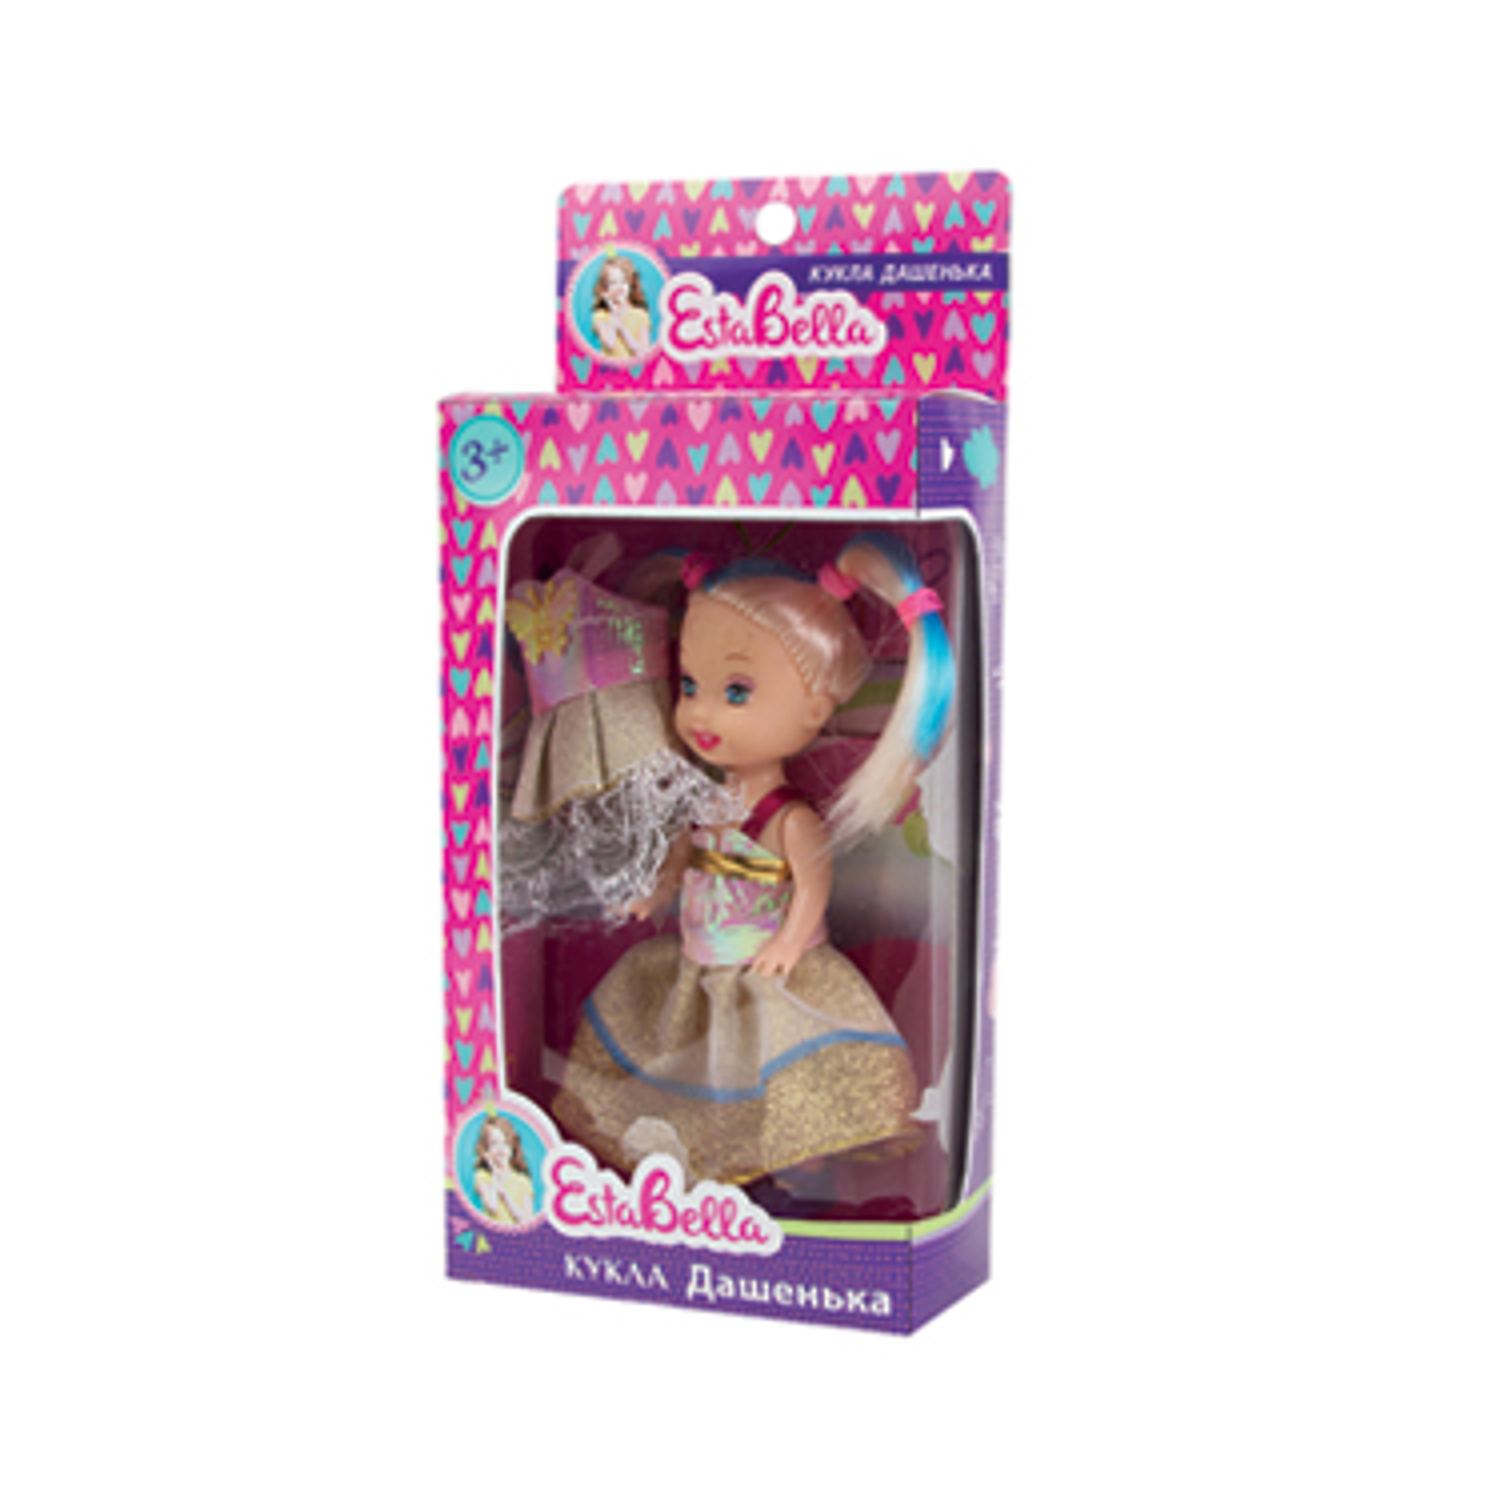 Маленькая кукла EstaBella Дашенька со сменным платьем 62248 - фото 1